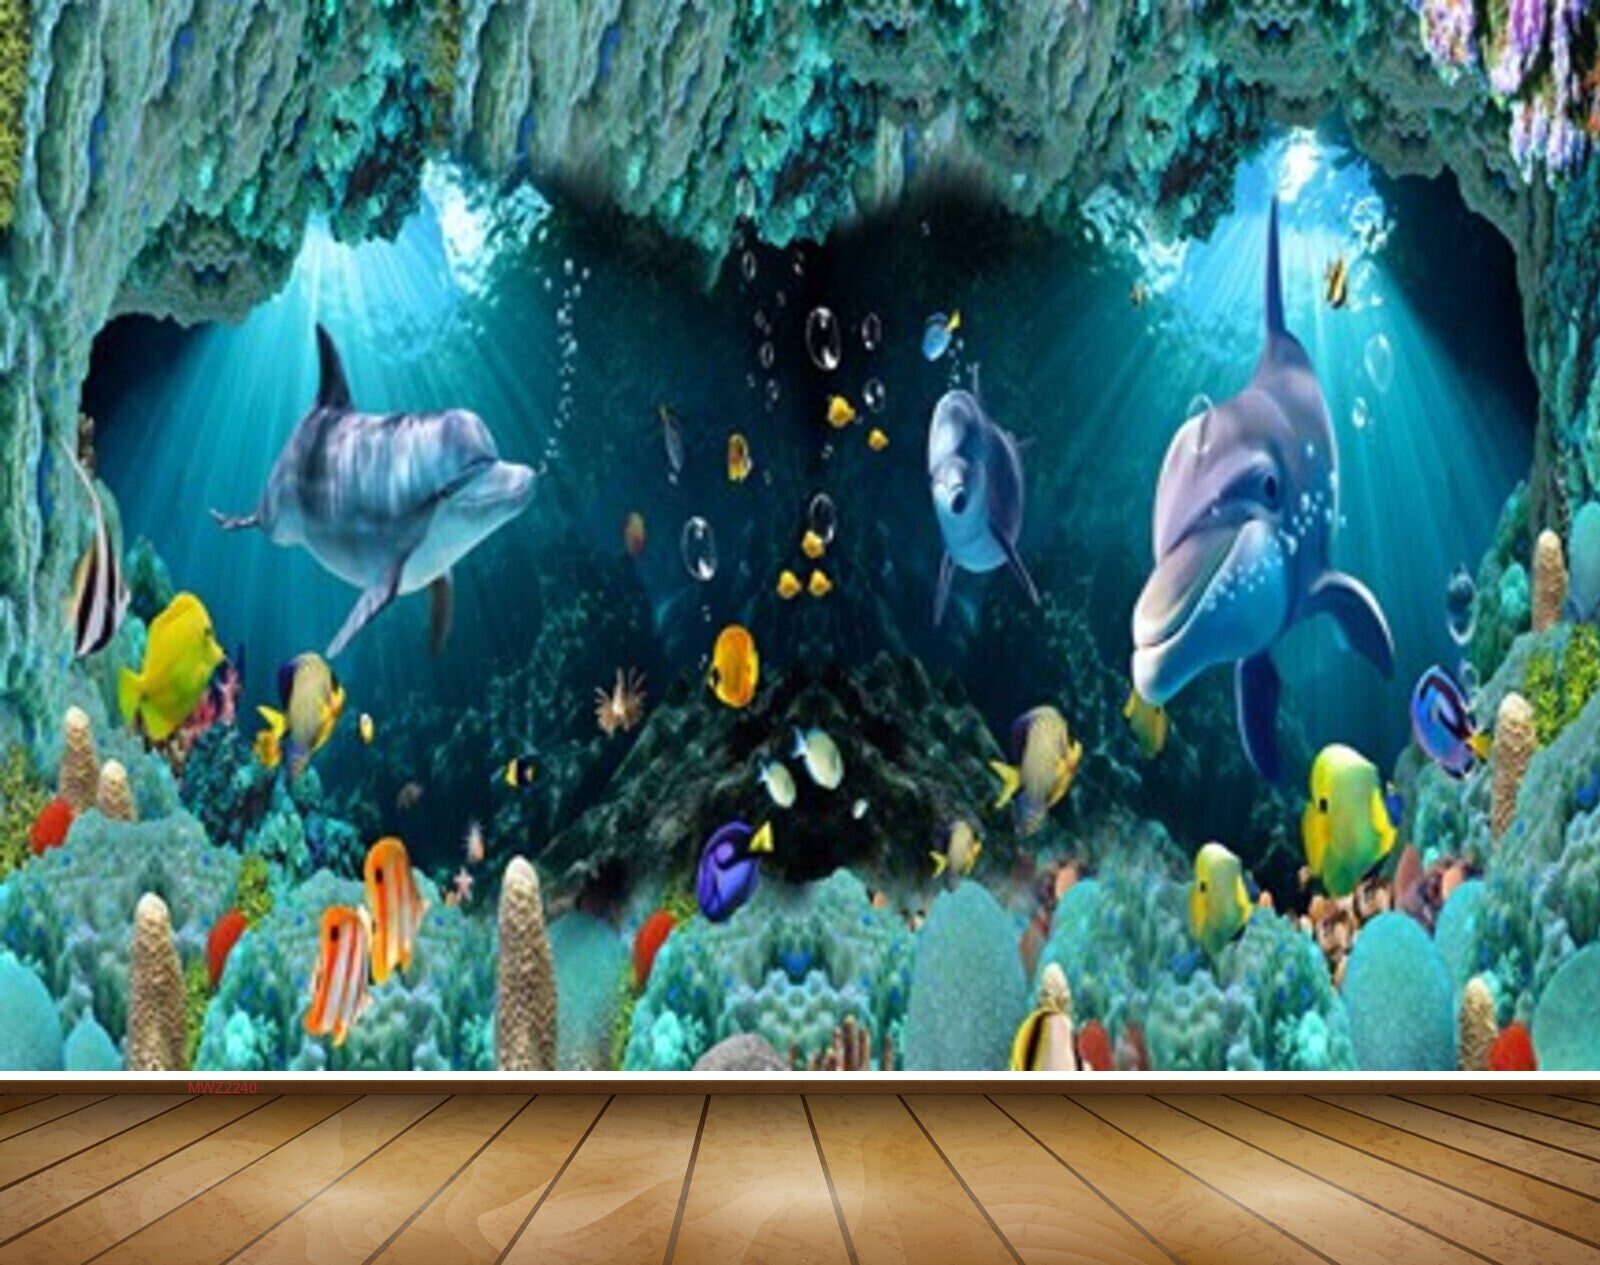 20 Picturesque and Beautiful Underwater Wallpapers  Hongkiat